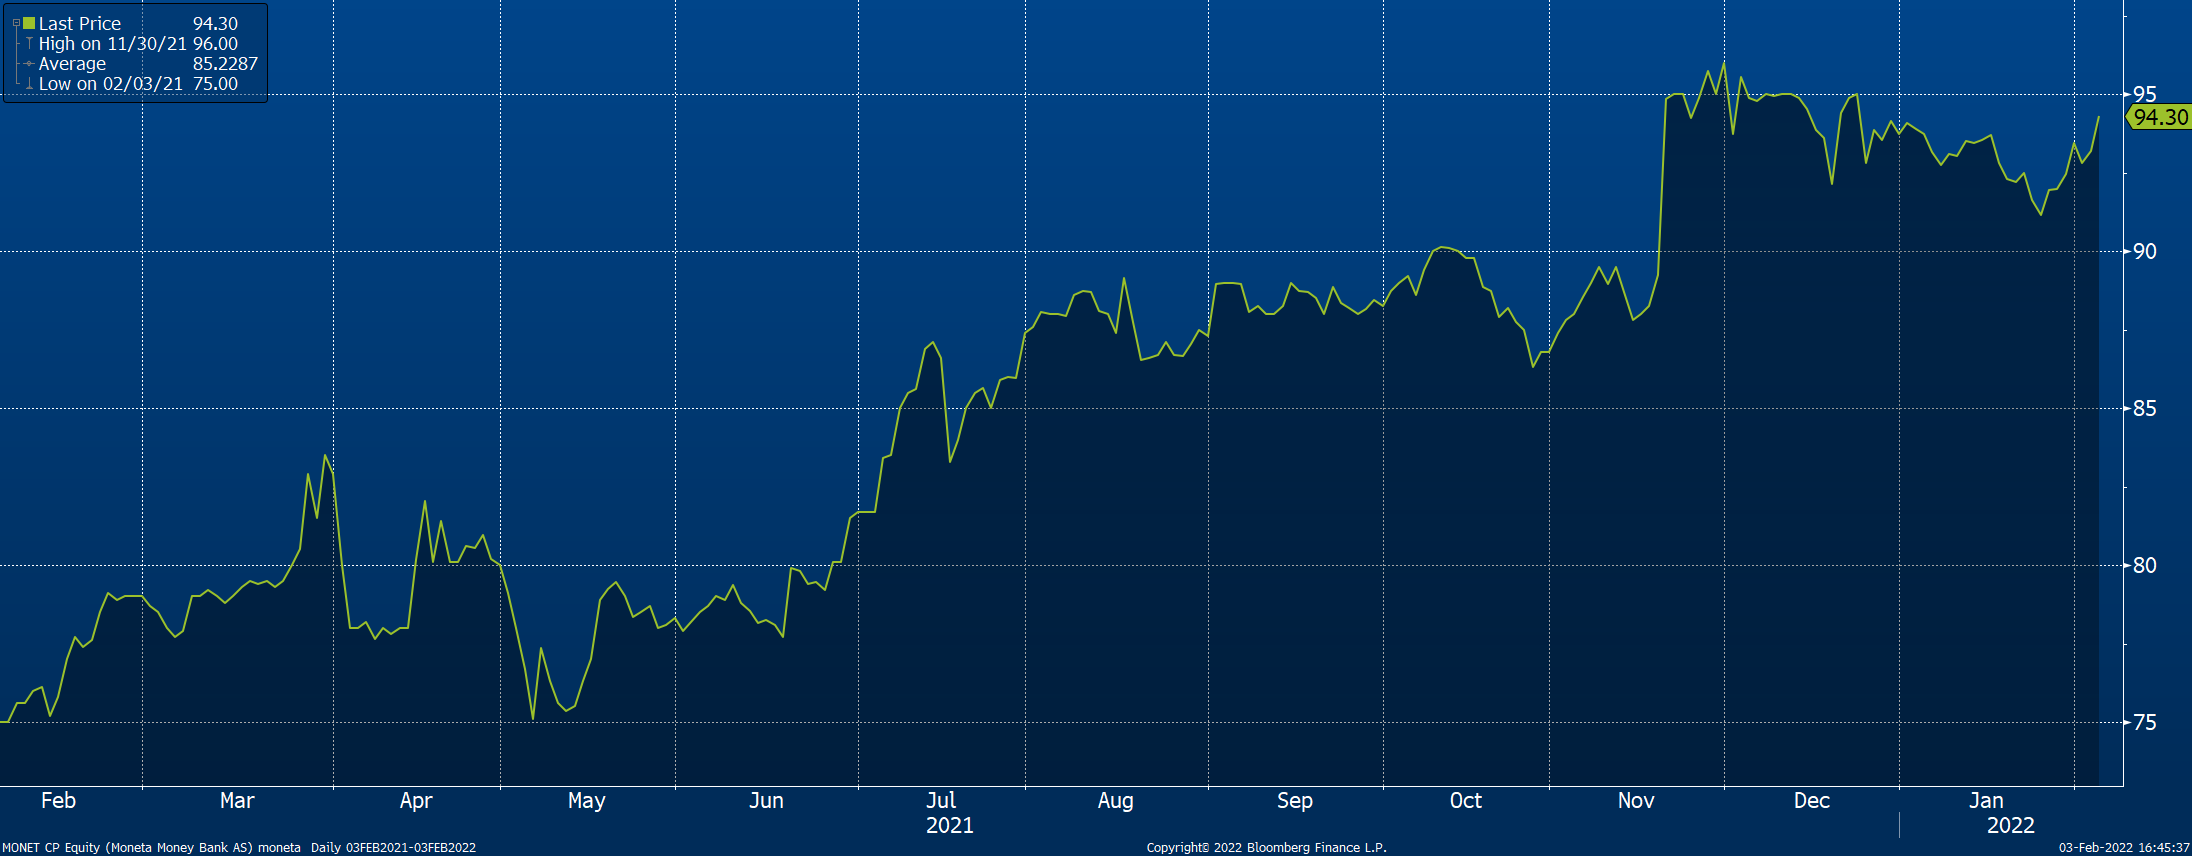 graf ceny akcií Monety